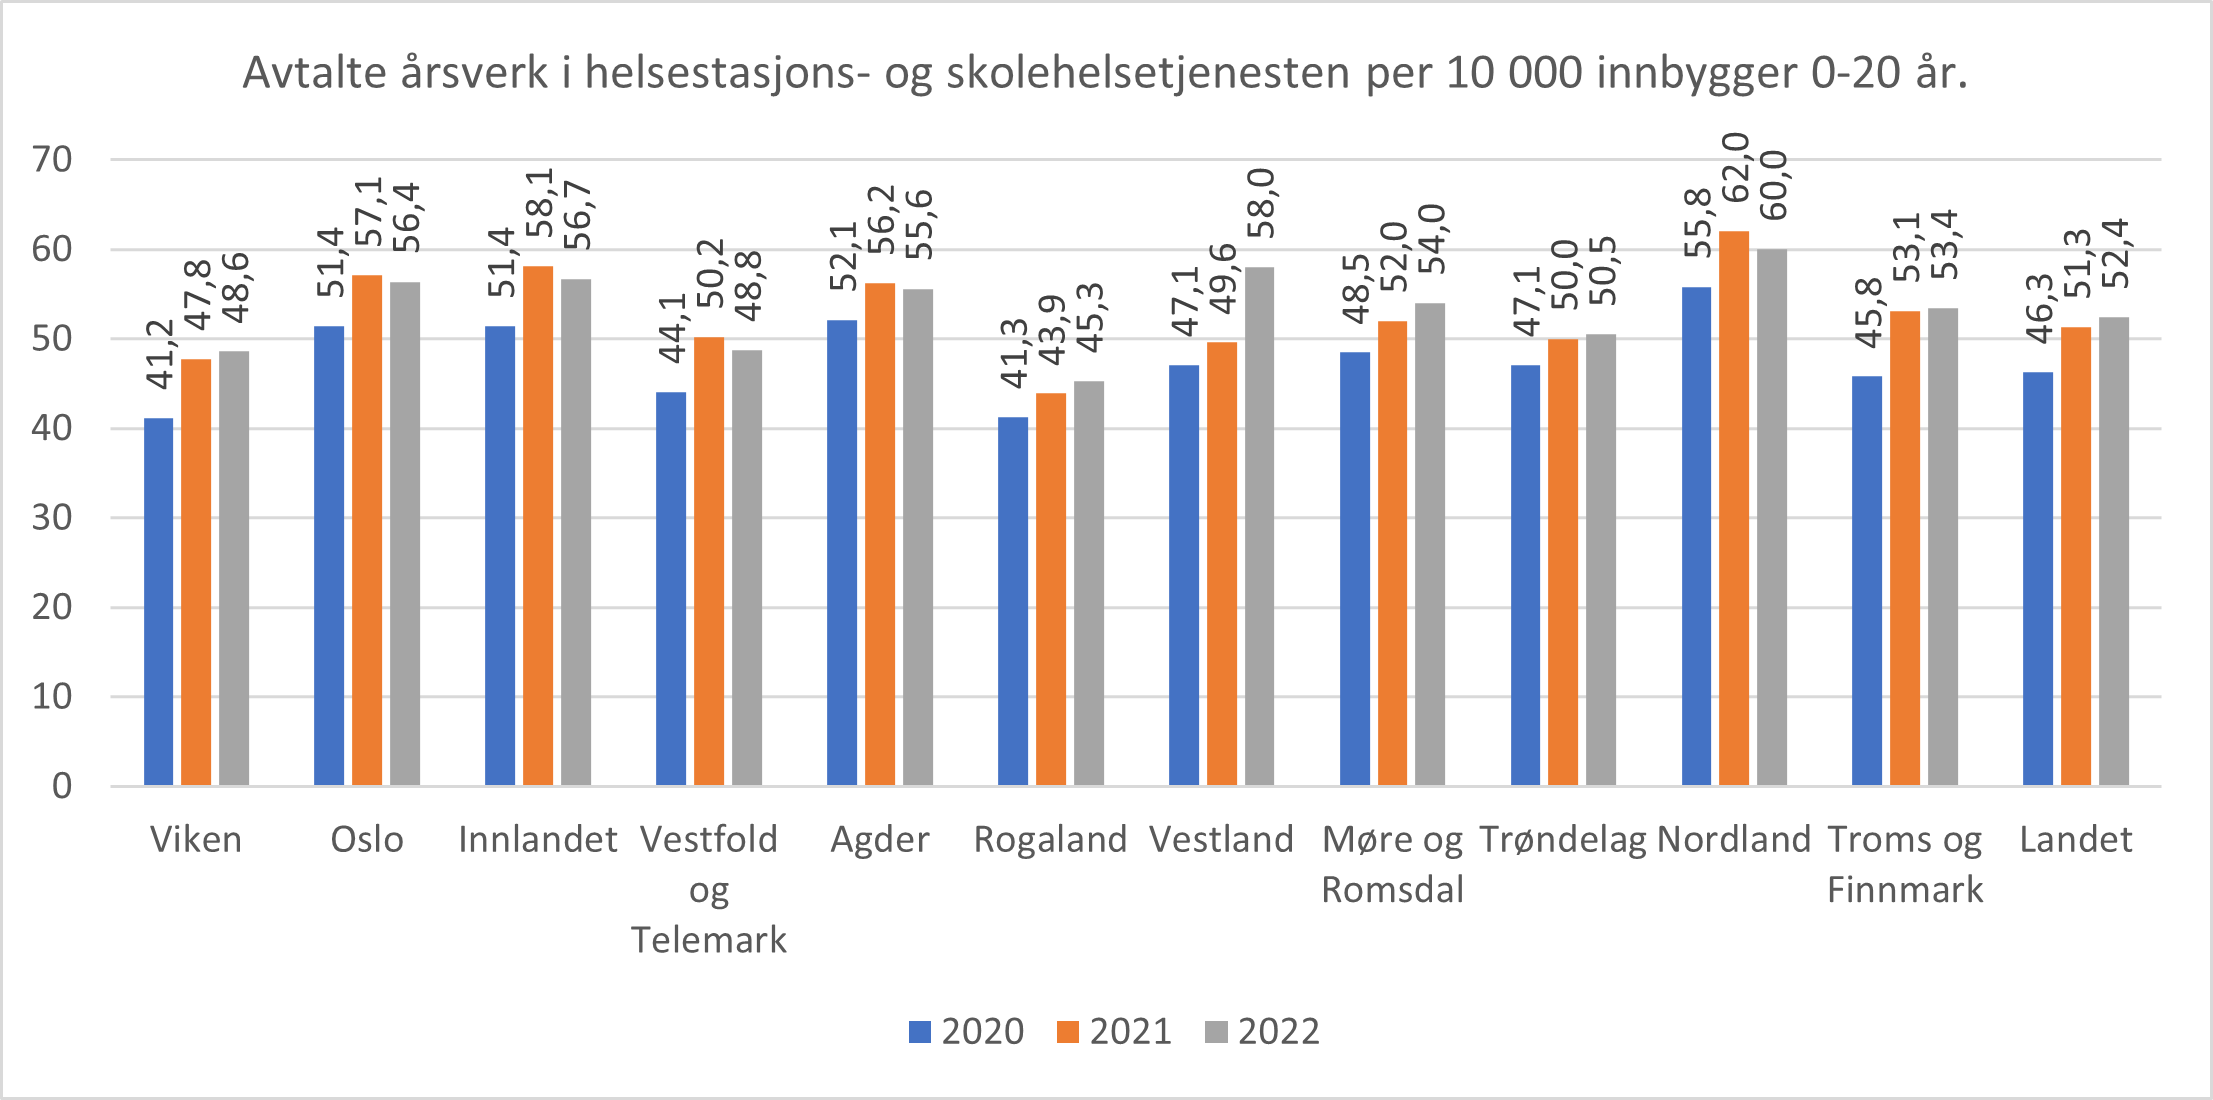 Avtalte årsverk i helsestasjons- og skolehelsetjenesten per 10 000 innbygger 0-20 år. Fylkesvis og landet. 2020-2022.